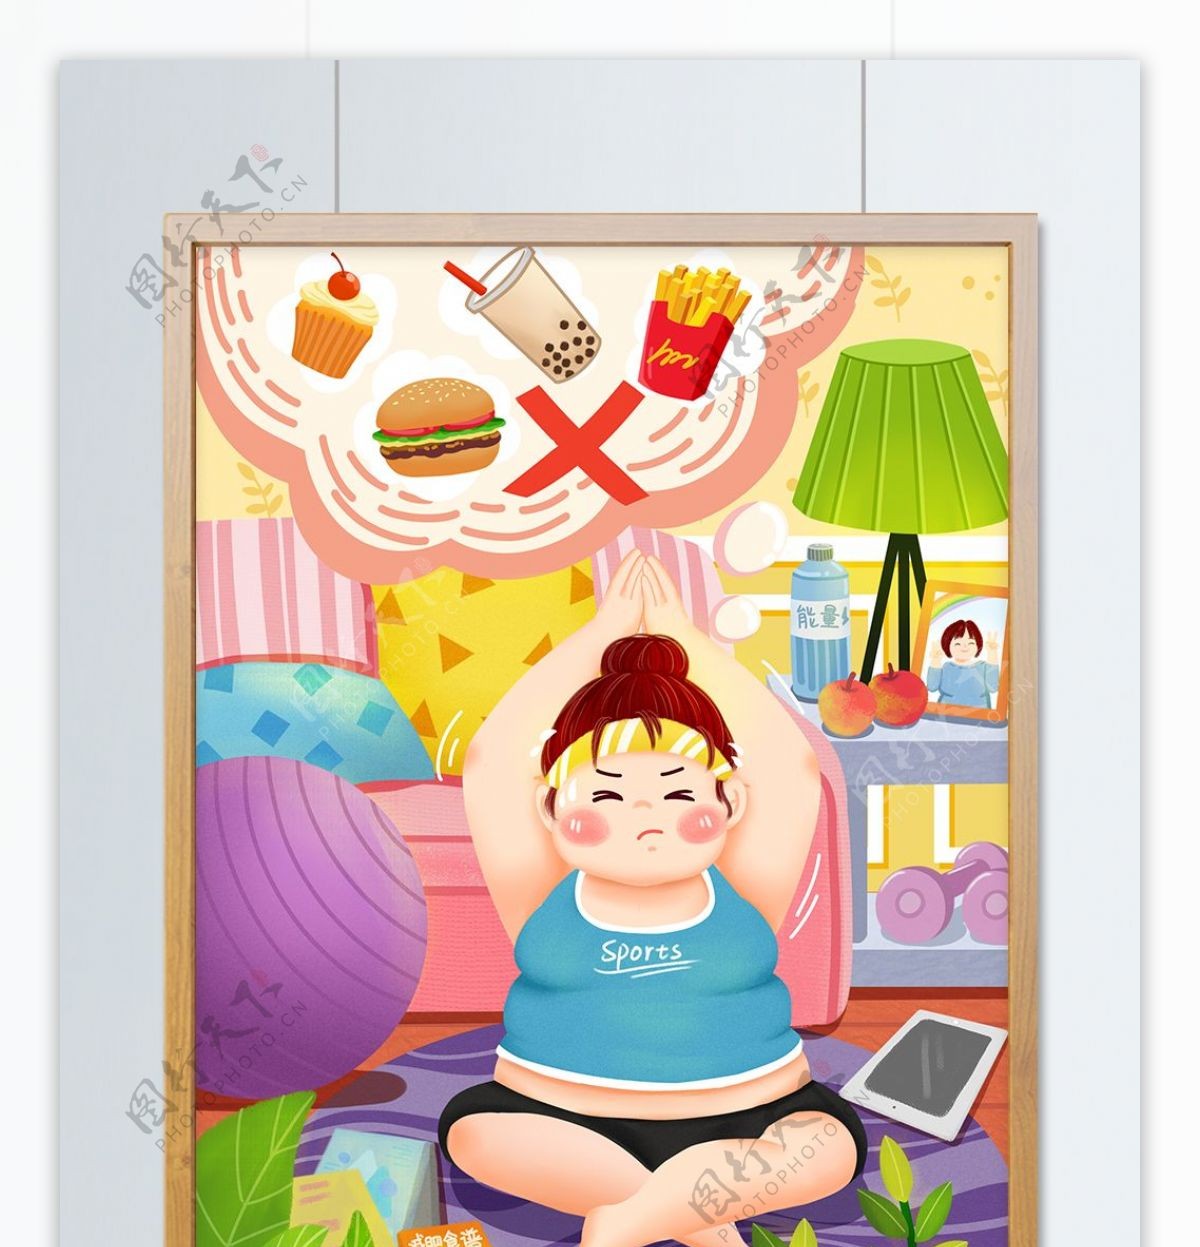 燃烧卡路里胖女孩瑜伽运动减肥清新手绘插画